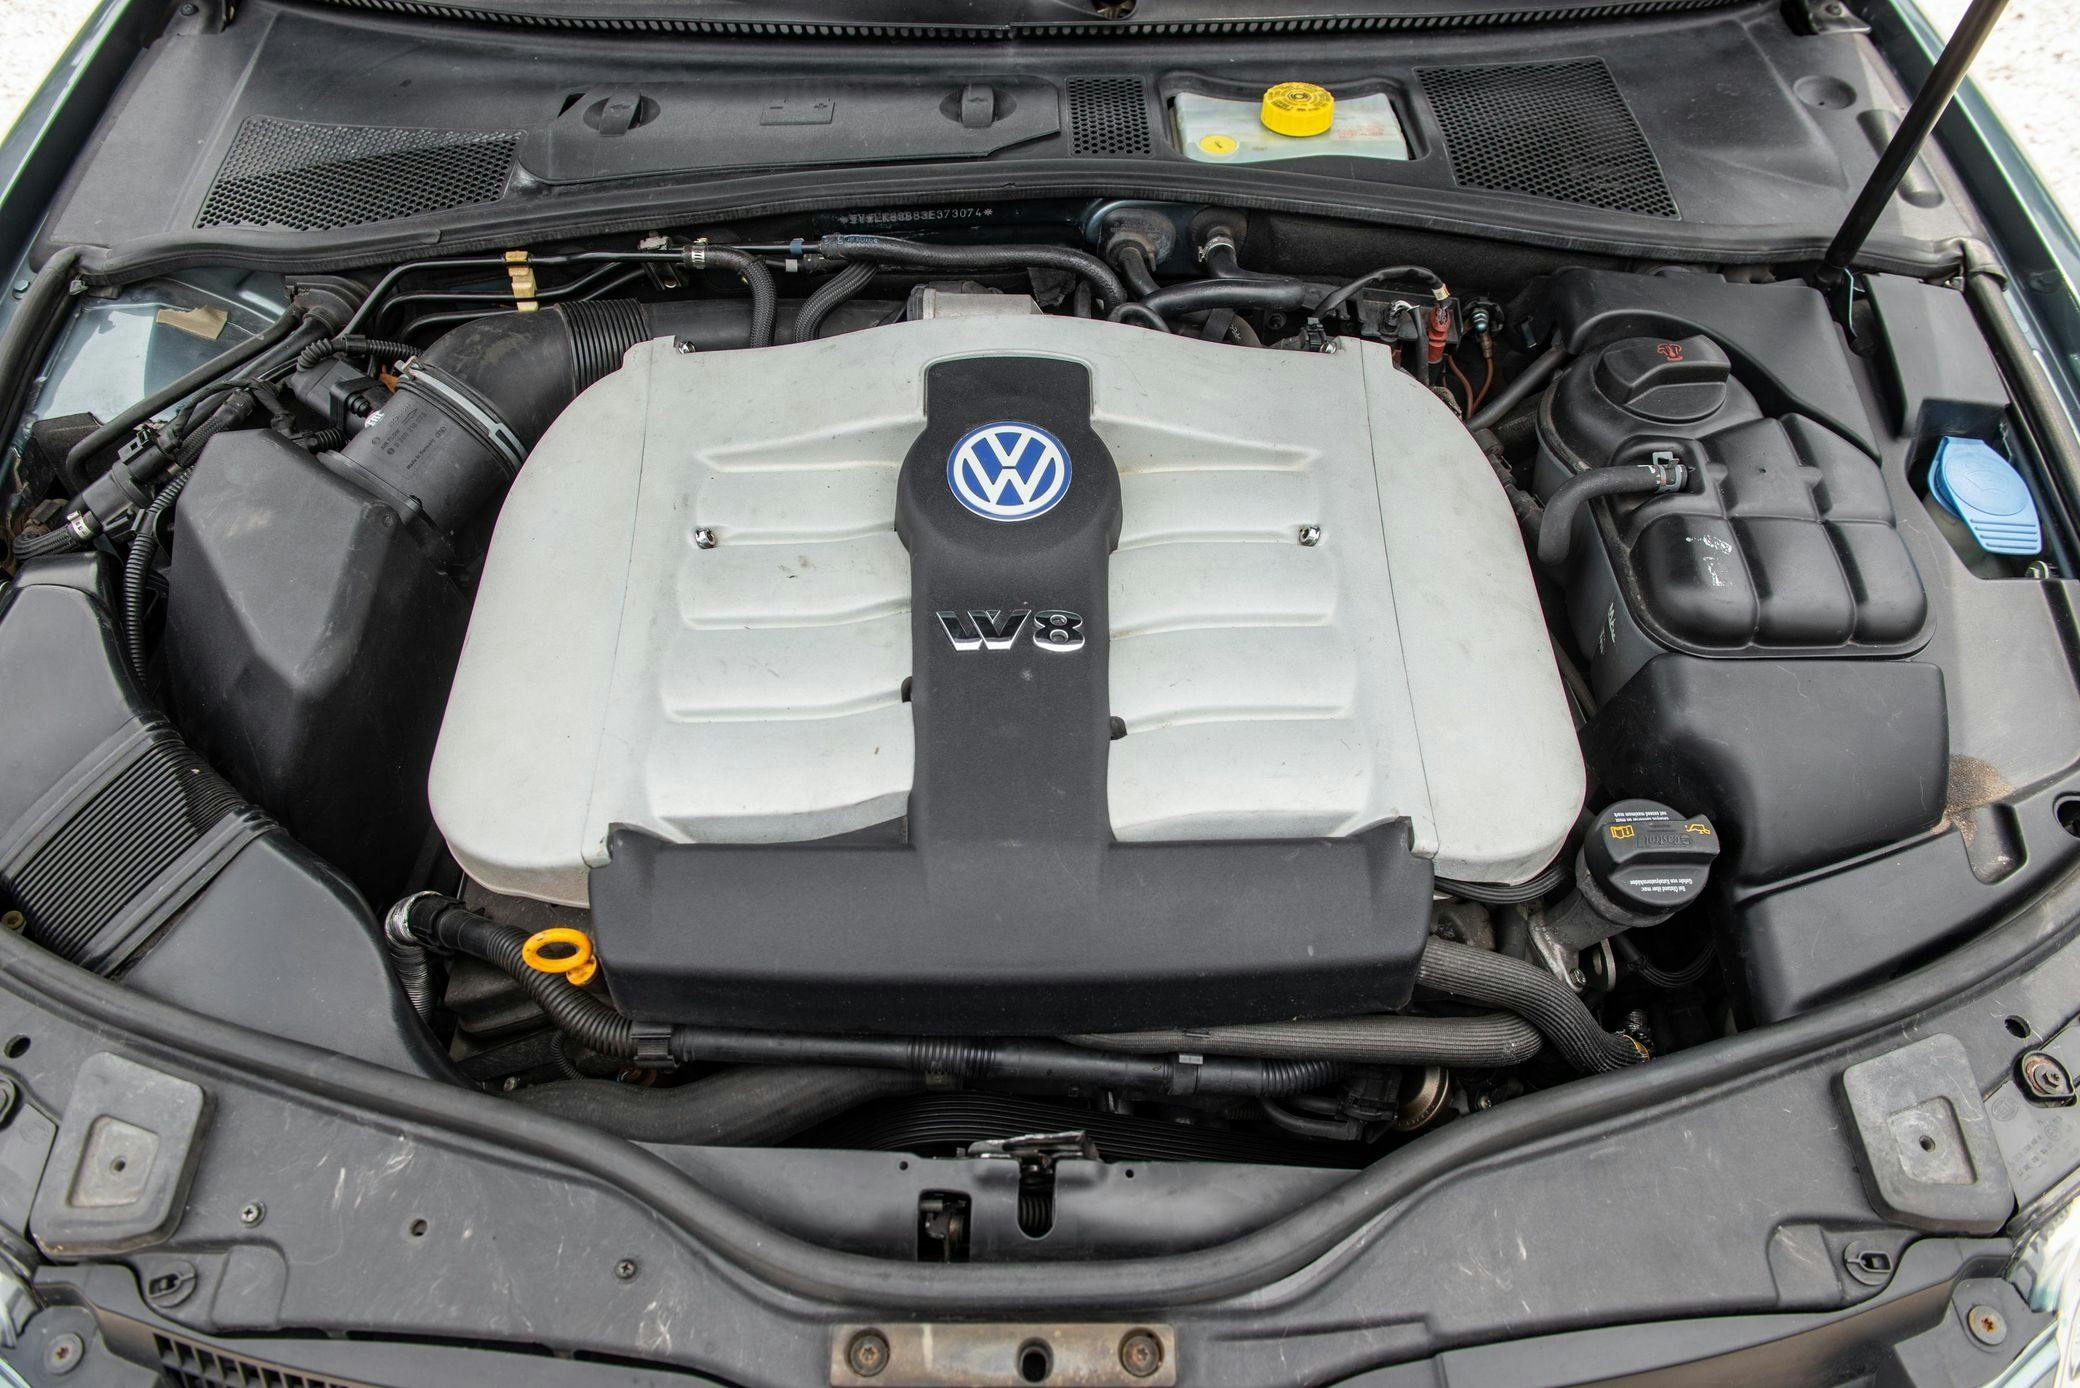 2003 Volkswagen Passat W8 wagon engine